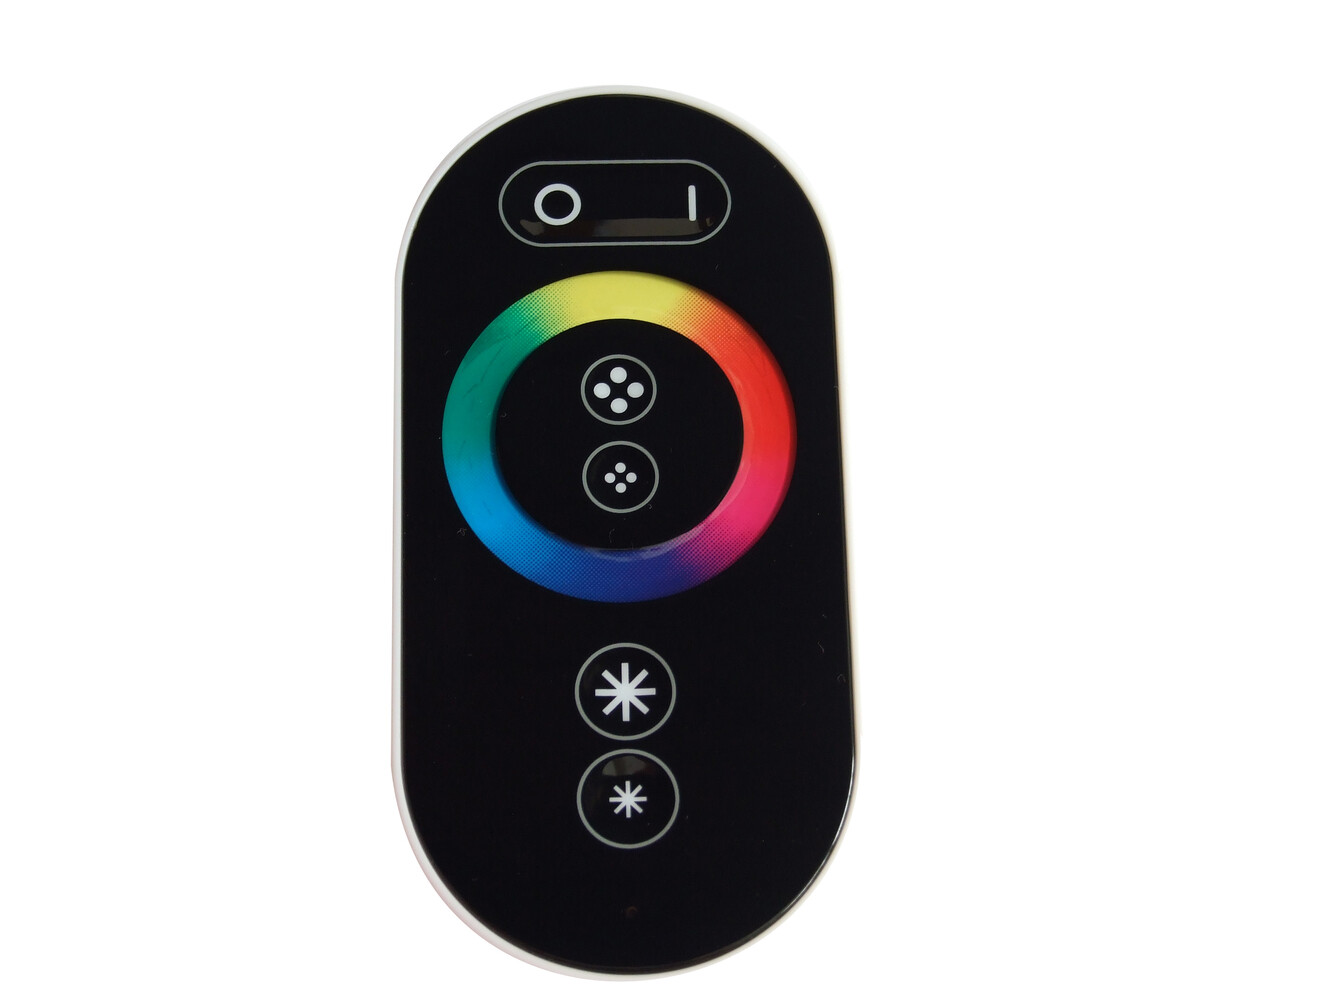                     Touch Funkfernbedienung Controller Dimmer für RGB LED Streifen
                                    